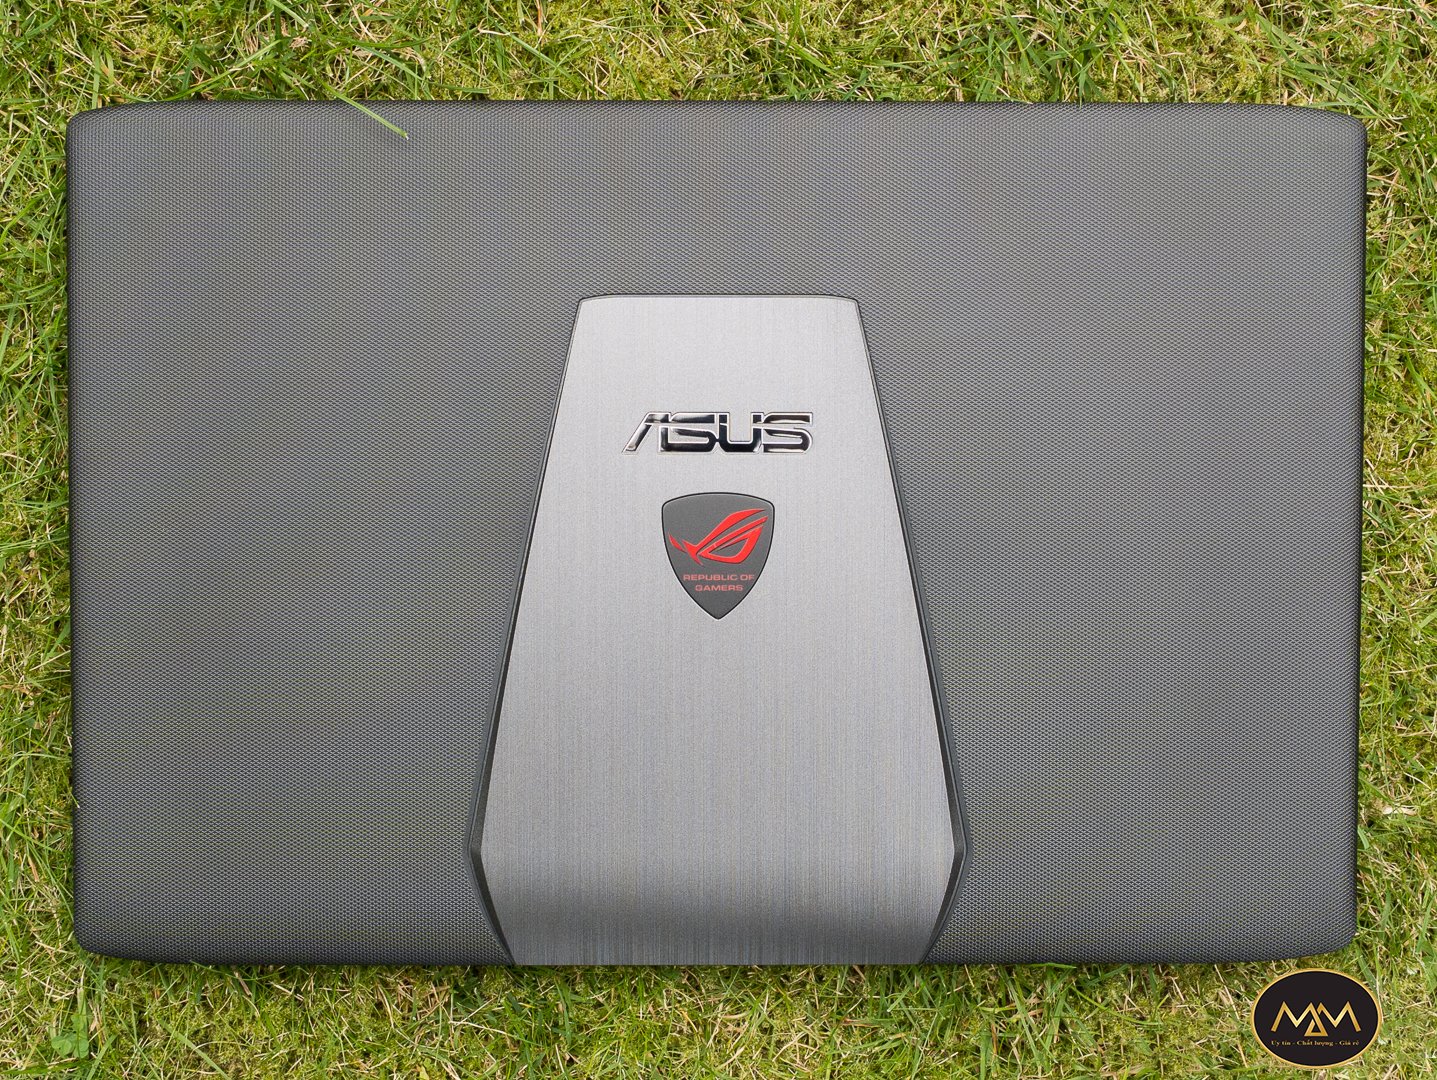 Asus Gaming GL552/ i5 6300HQ/ Ram 8G/ SSD128 + 500G/ GTX 950M 4G/ 15.6inch/ LED ĐỎ/ Chuyên Game/ Giá rẻ2